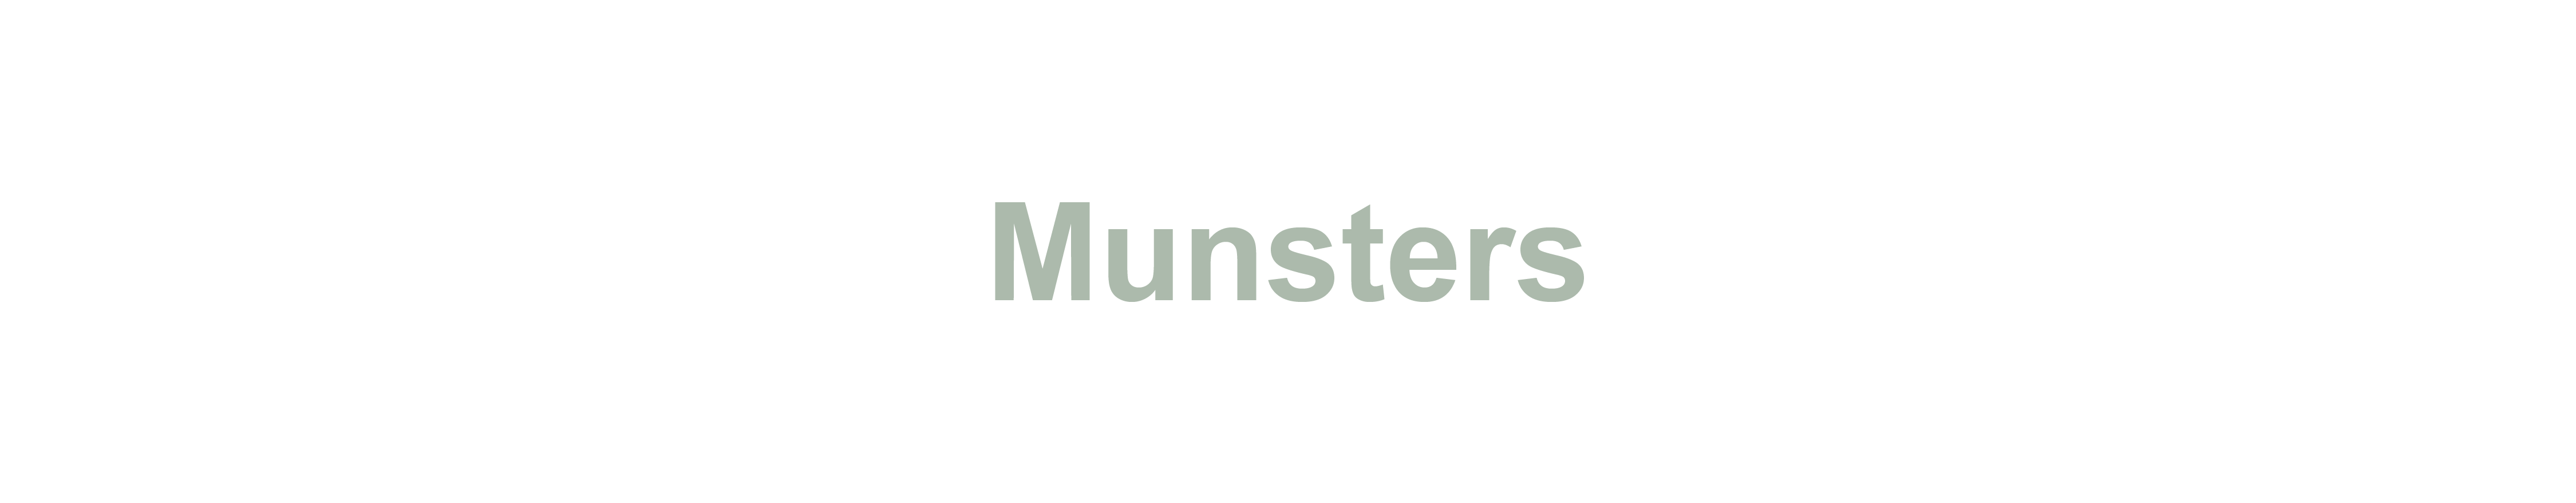 Munsters_Tekengebied 1